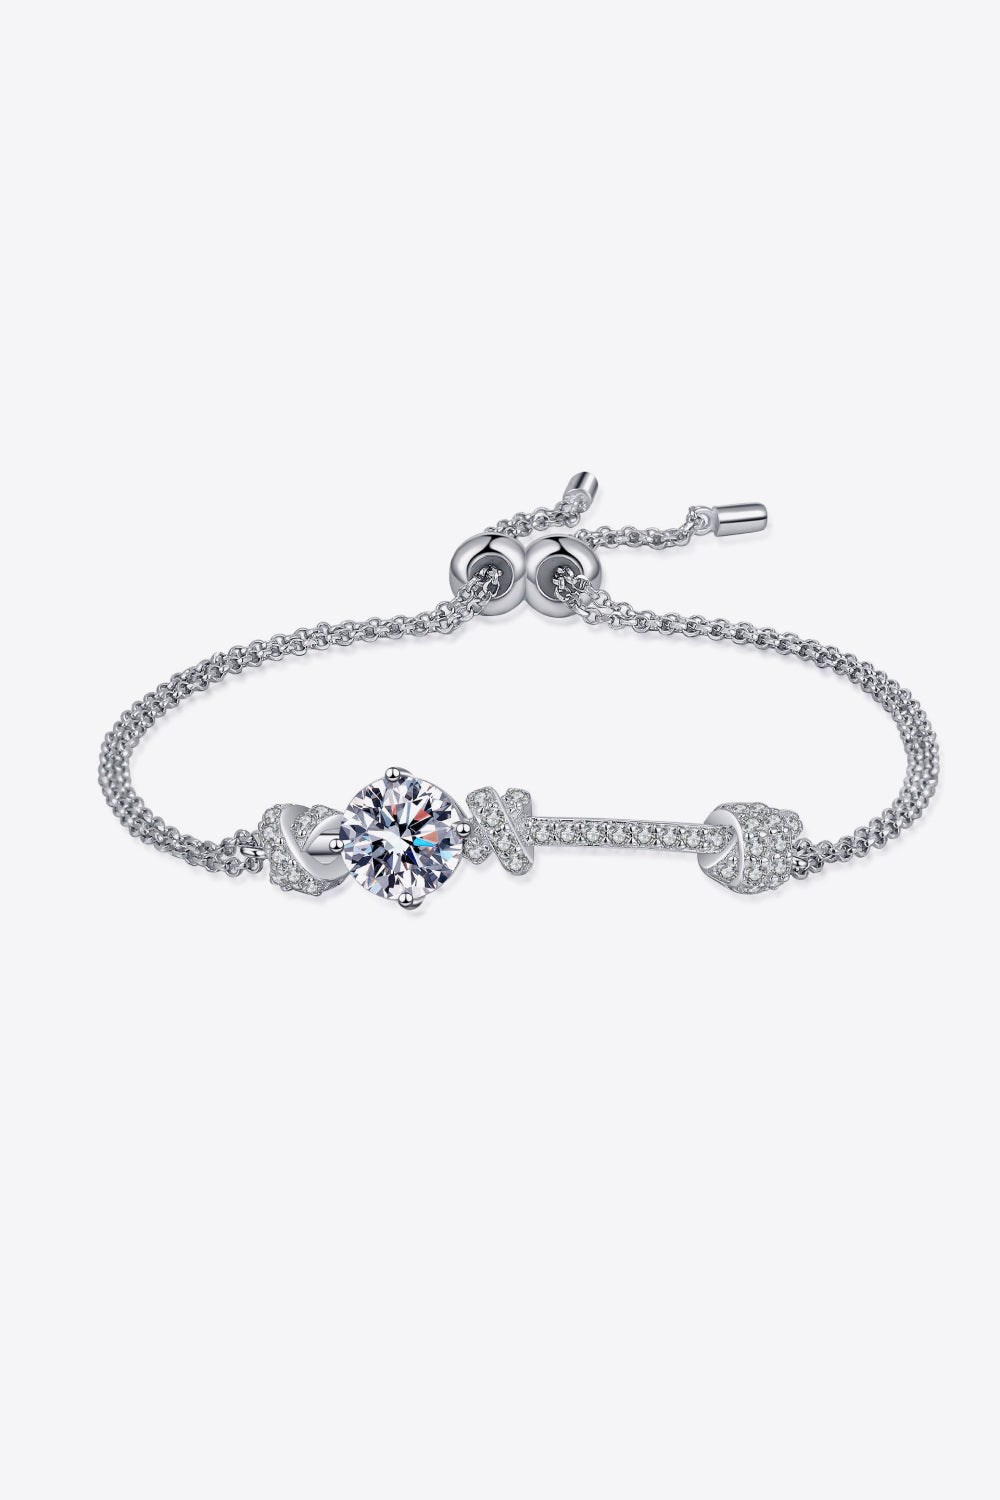 2 Carat Moissanite 925 Sterling Silver Bracelet - Silver / One Size - Women’s Jewelry - Bracelets - 3 - 2024